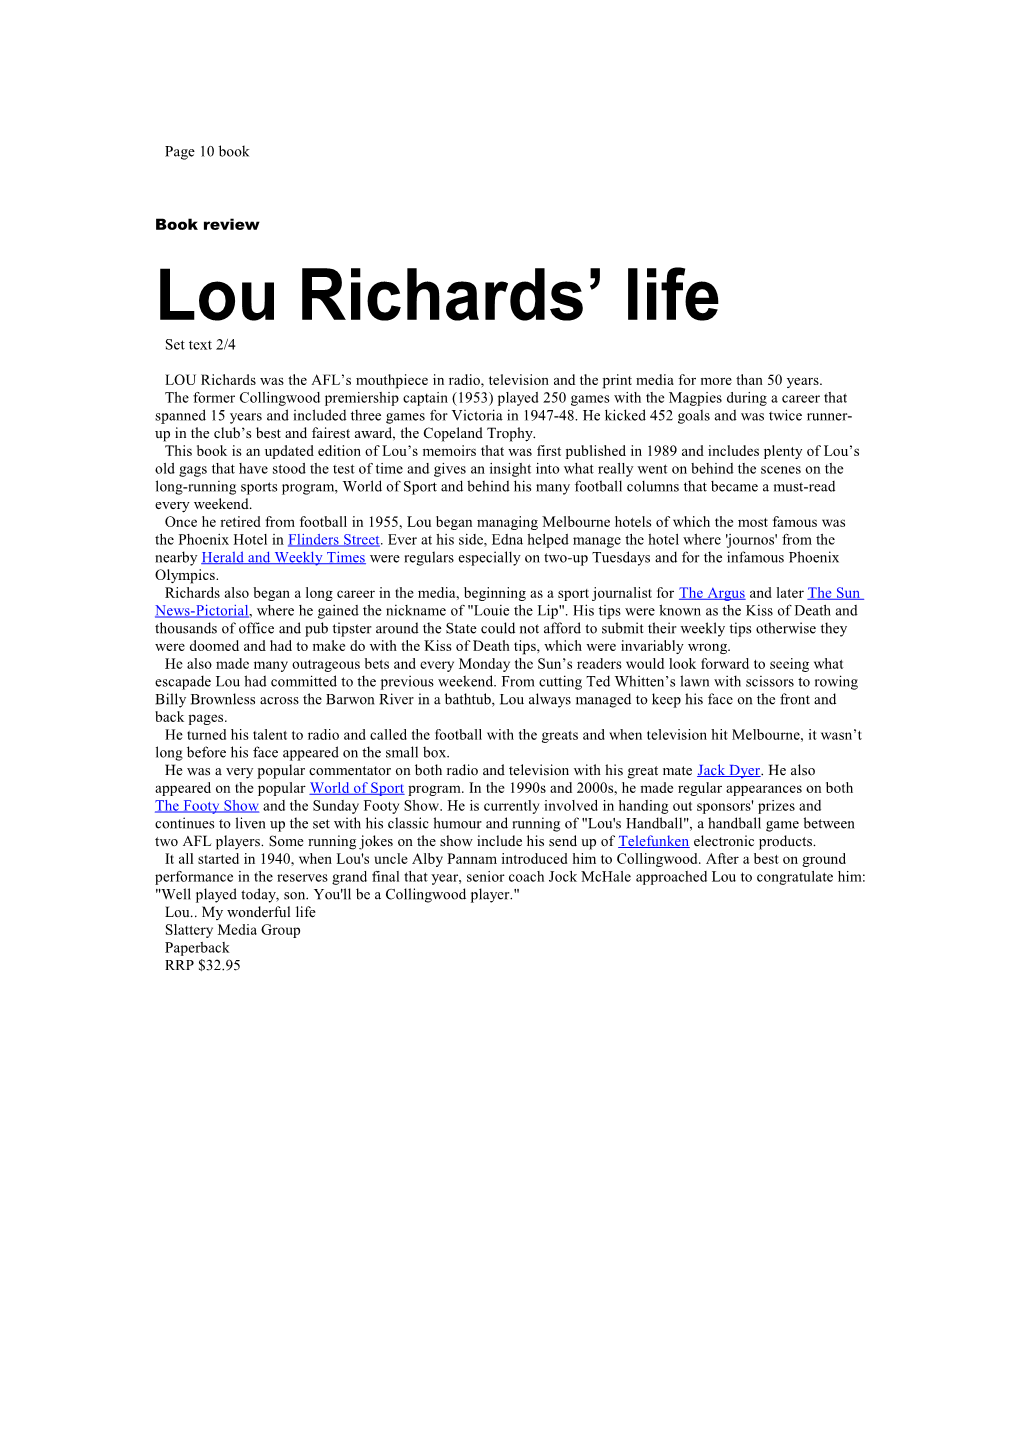 Lou Richards Life